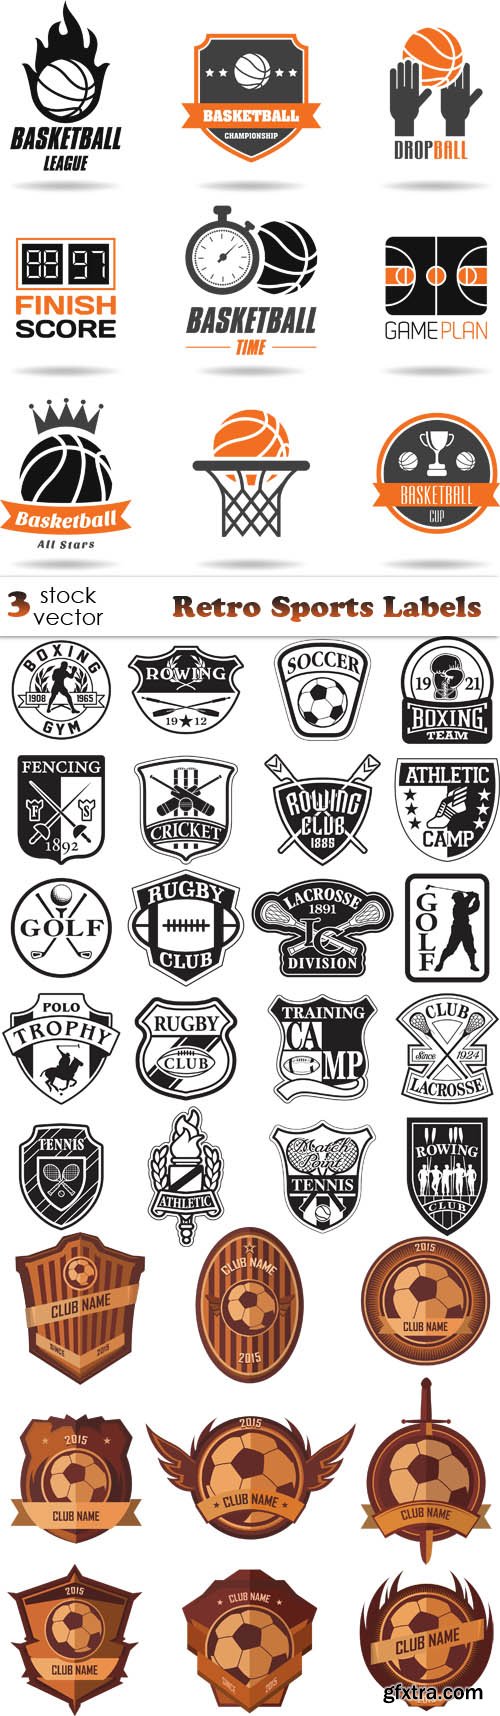 Vectors - Retro Sports Labels